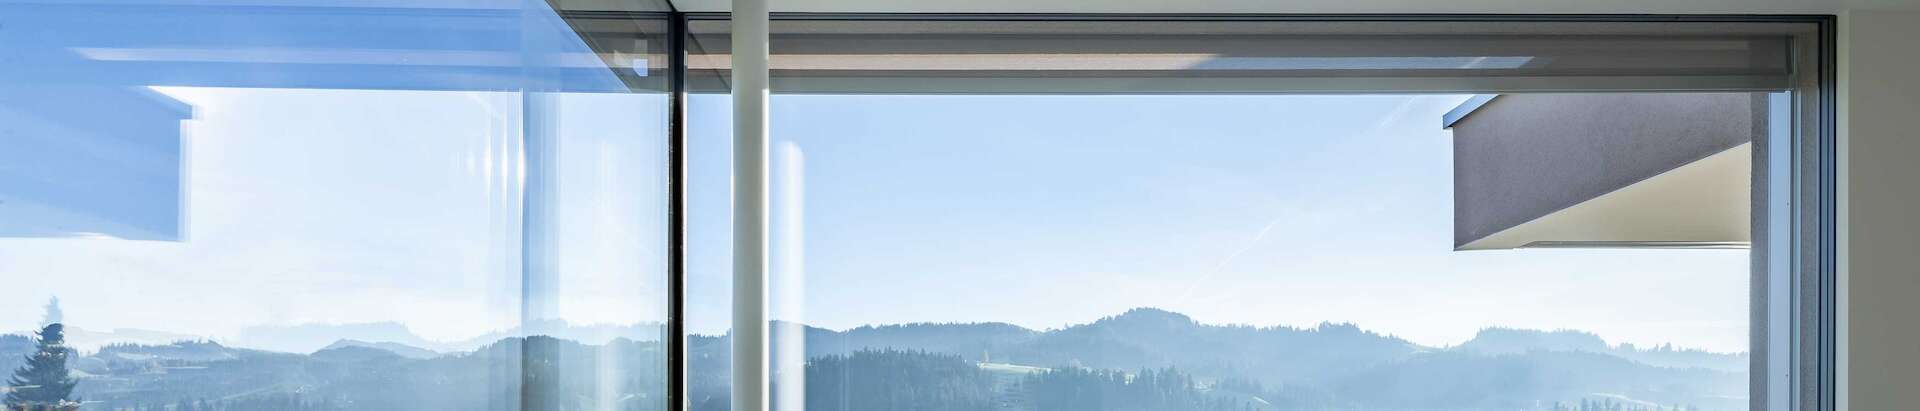 Ganzglasecke aus rahmenlosen Fenstern mit Alpen-Panorama